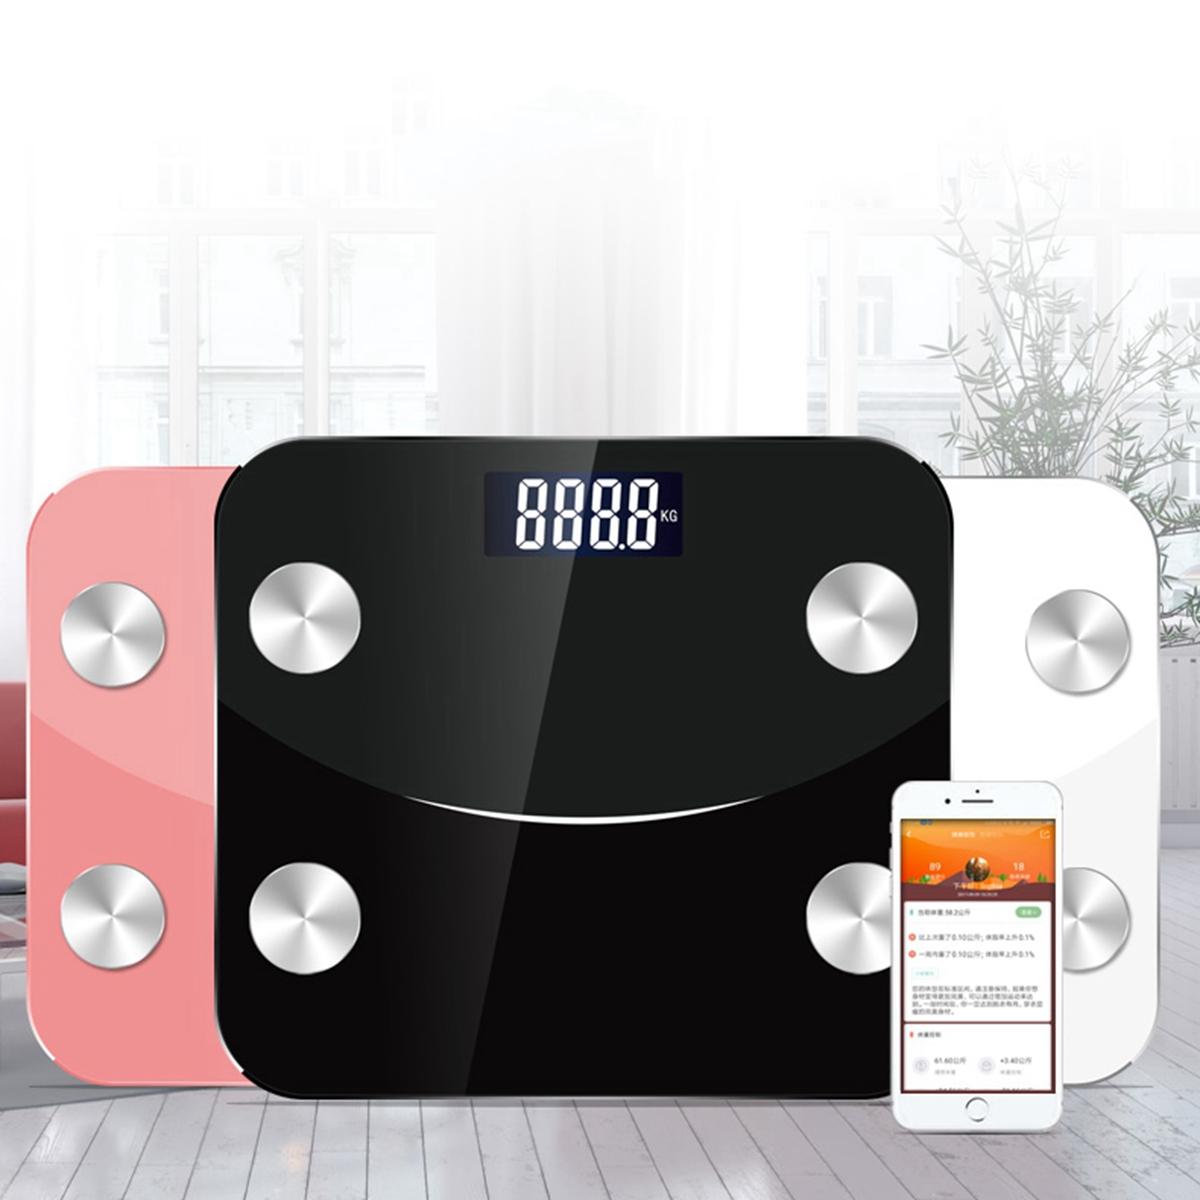 

Приложение Intelligent Body Fat Шкала Smart Wireless Шкала для определения веса тела, жира, воды, мышц, массы тела, BMI,